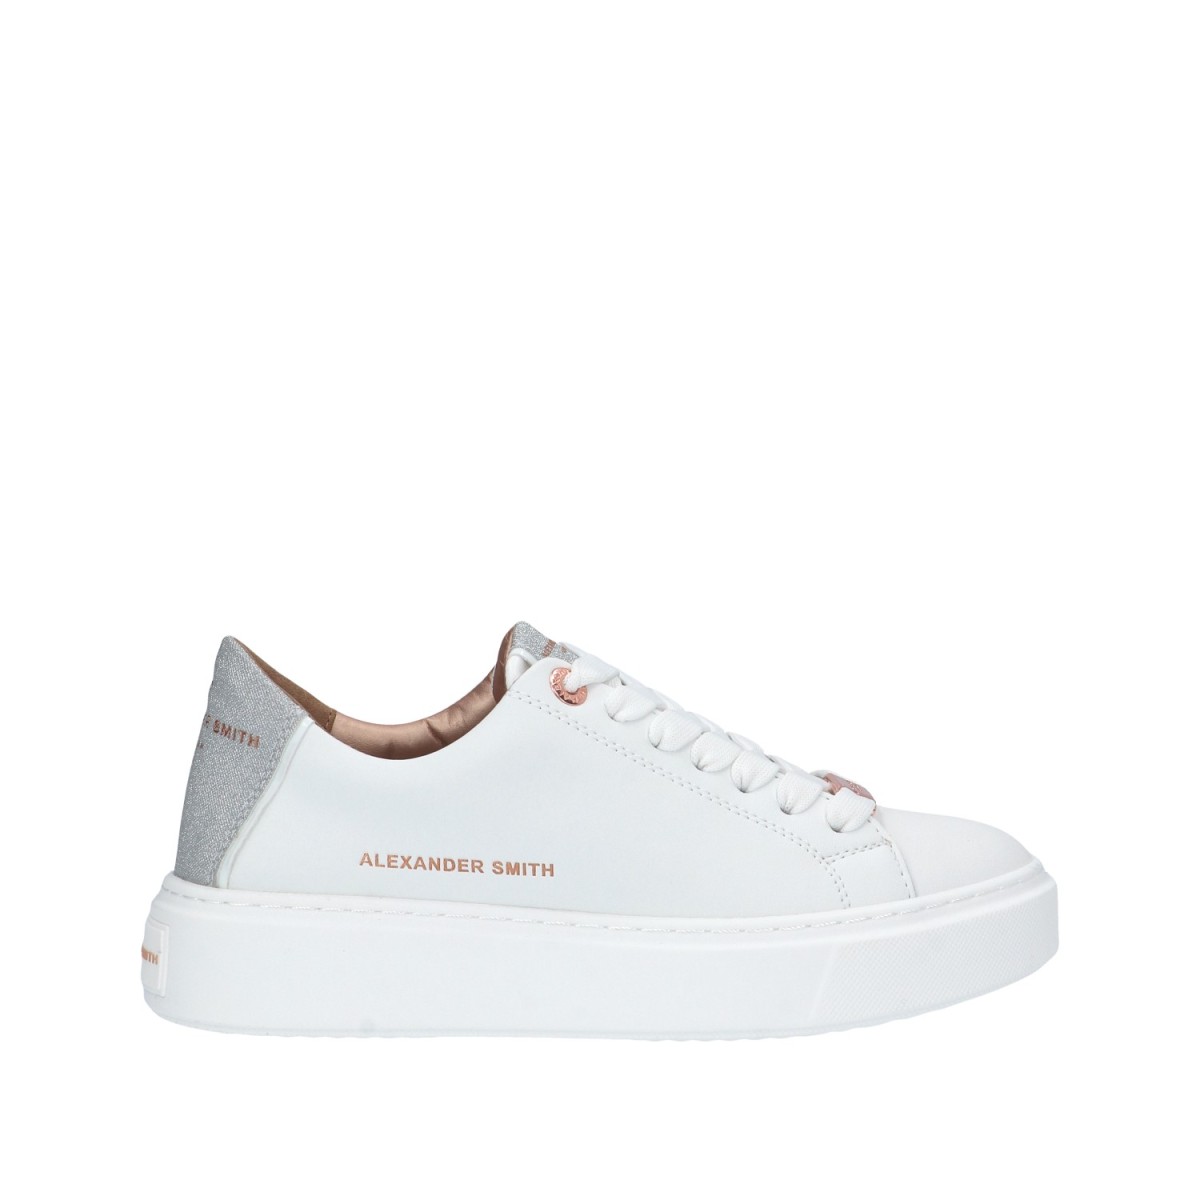 Alexander smith Sneaker Bianco/argento Gomma LDW-8290-WSV